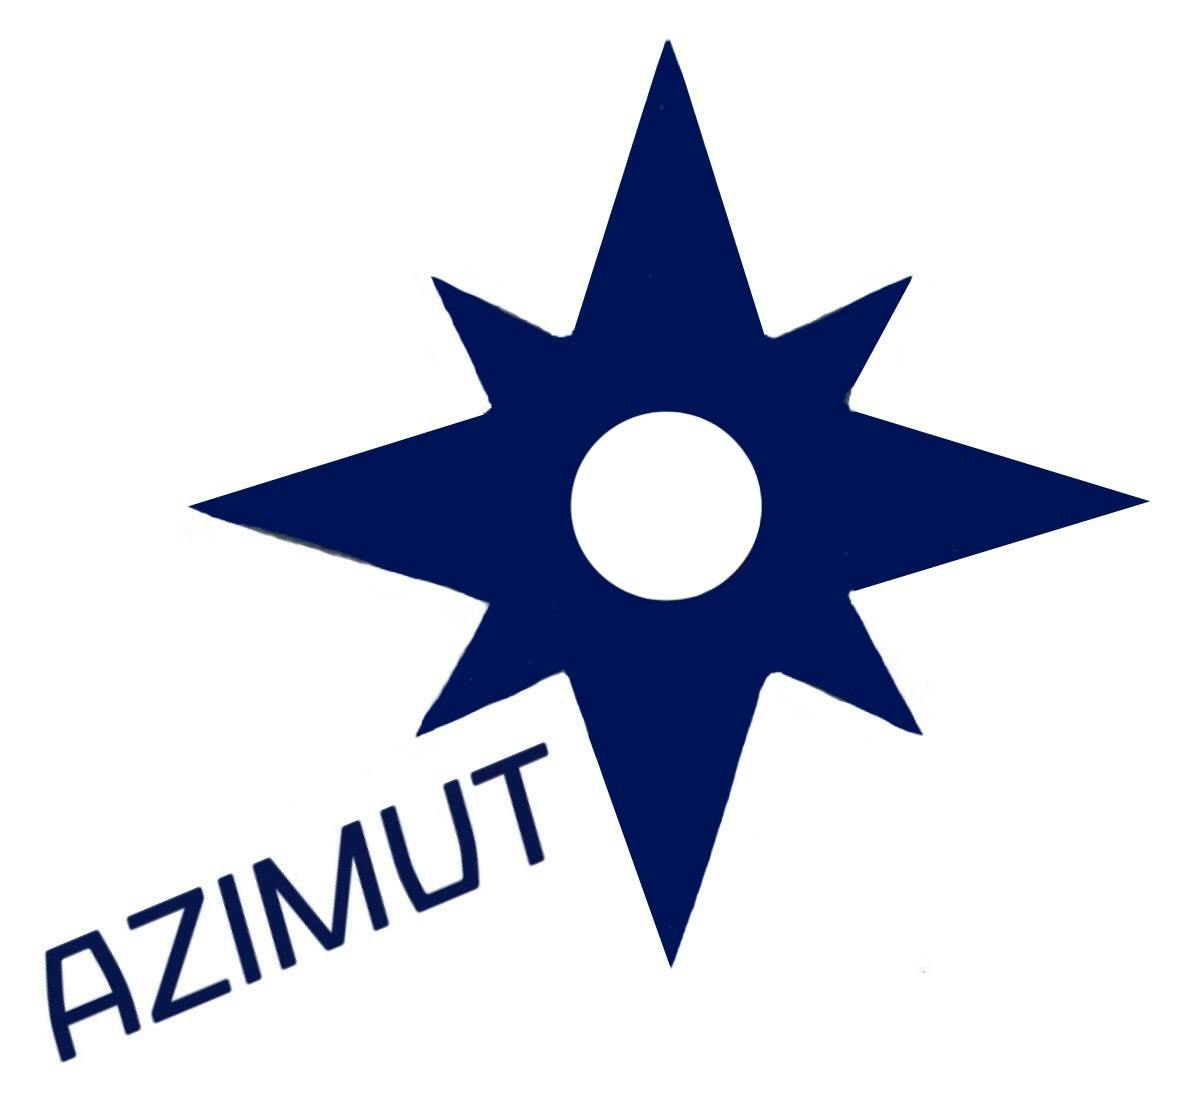 azimut-project